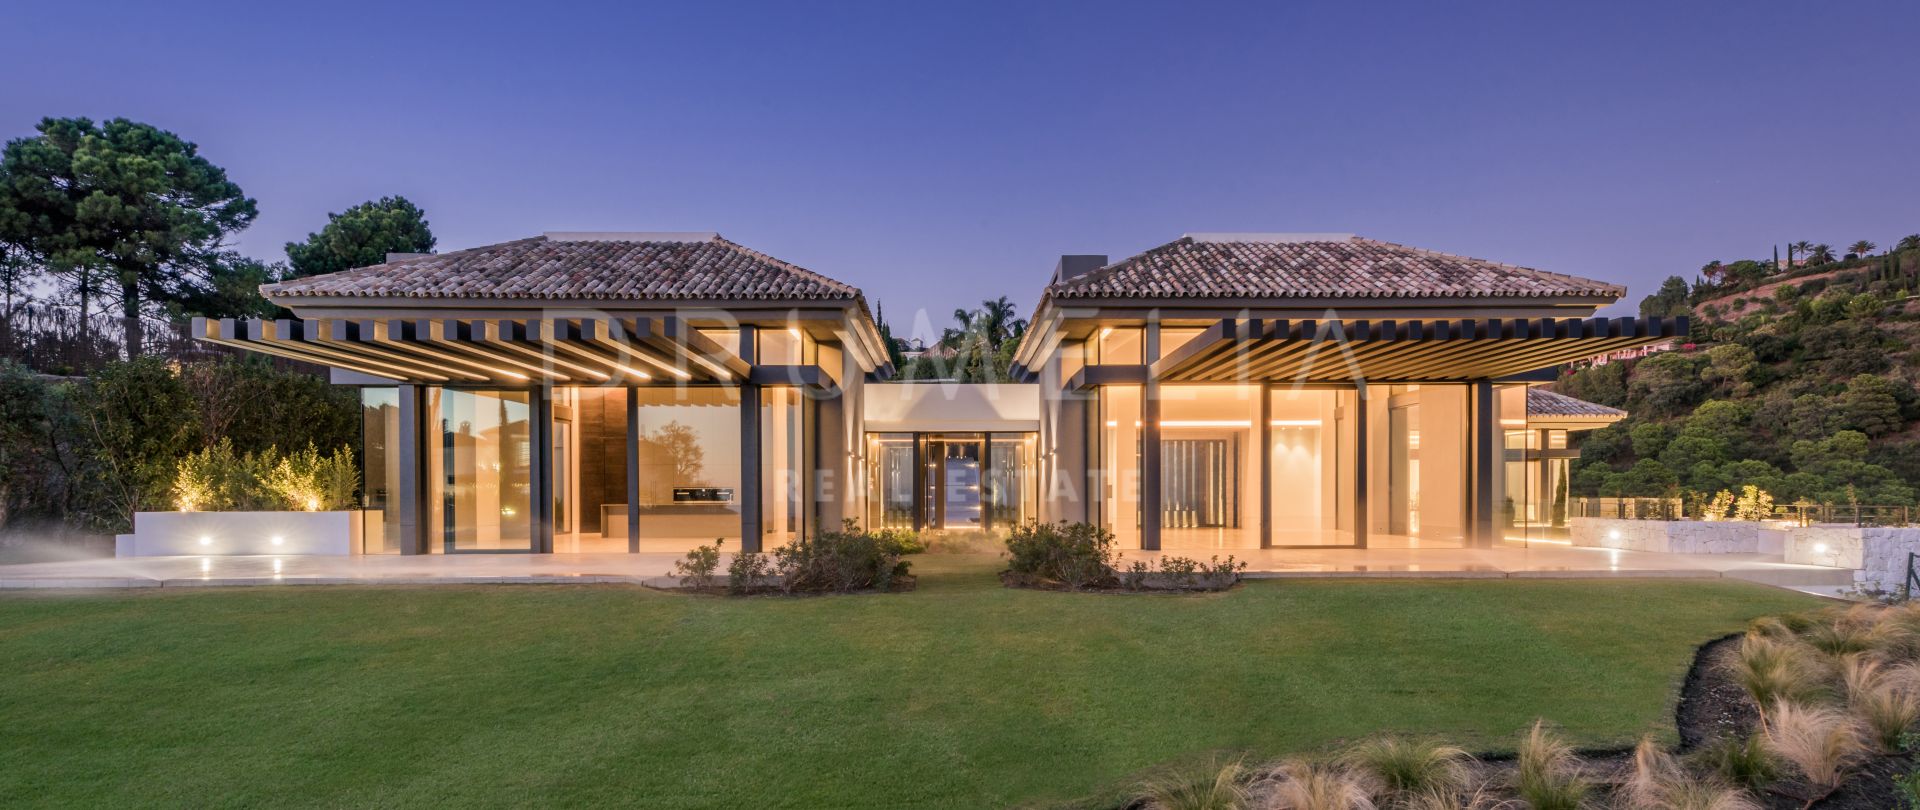 El Cipres - Außergewöhnliche neue moderne/zeitgenössische Villa, La Zagaleta, Benahavis